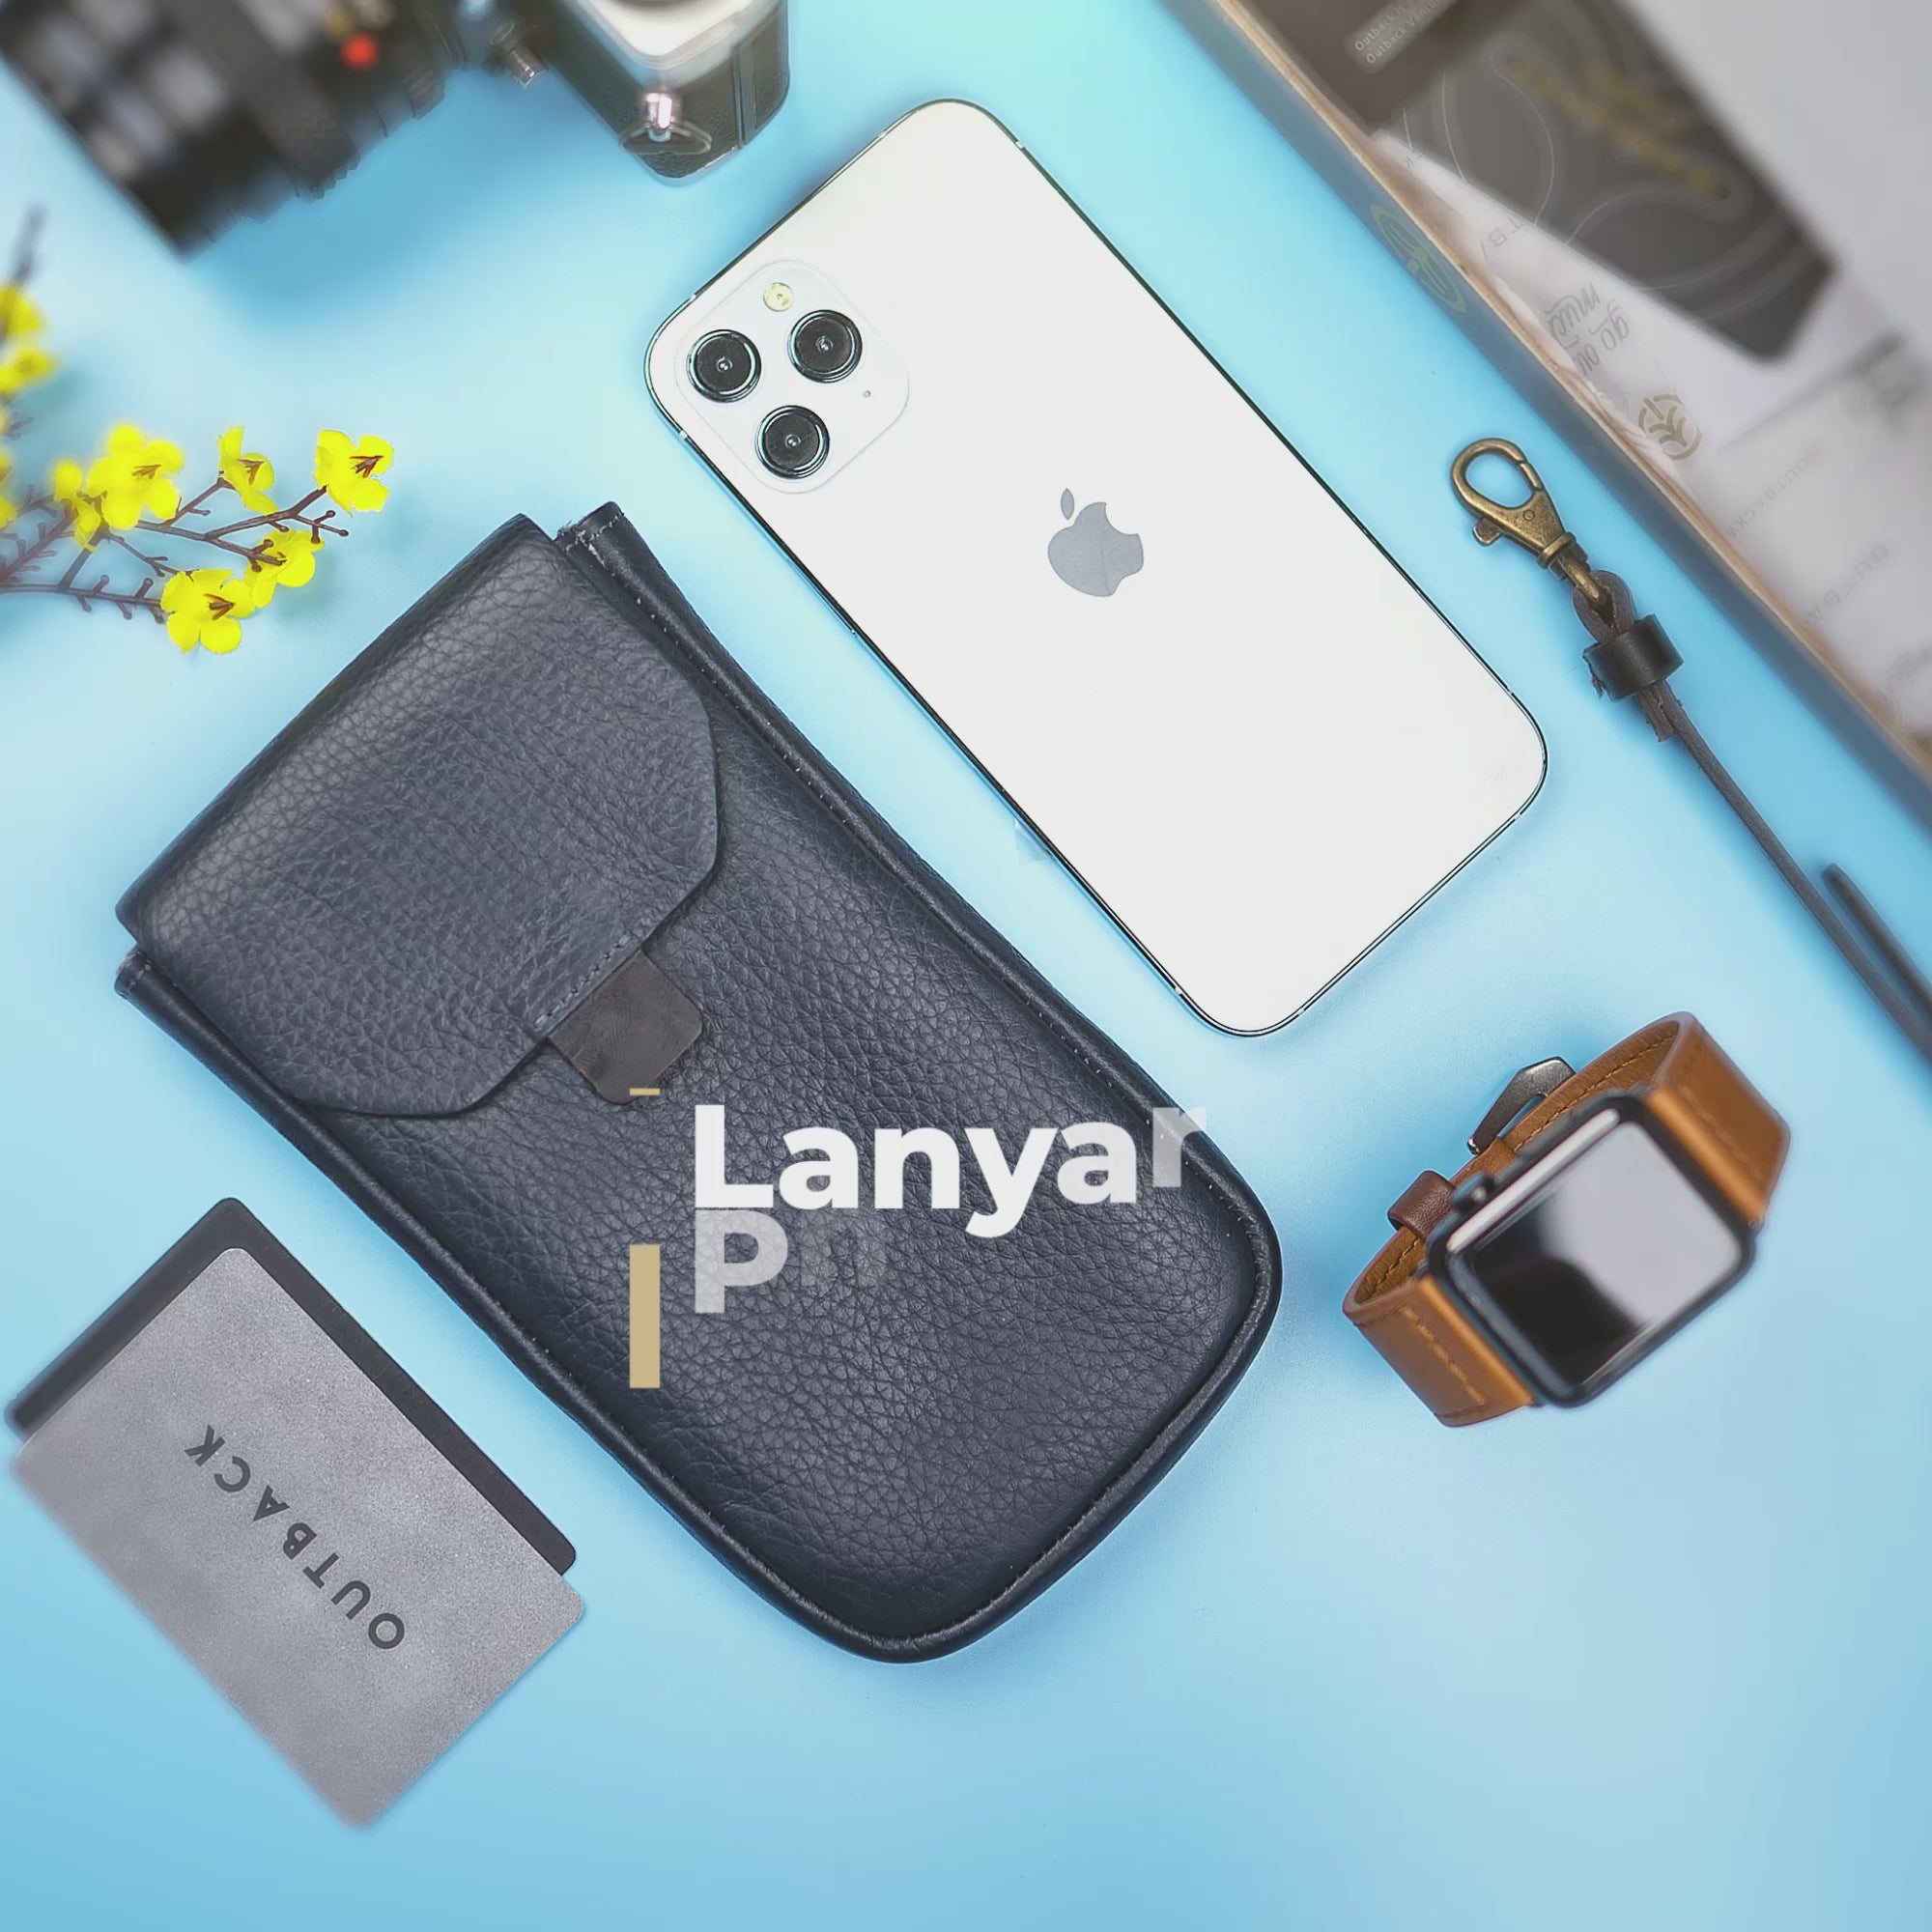 Lanyard Phone Wallet